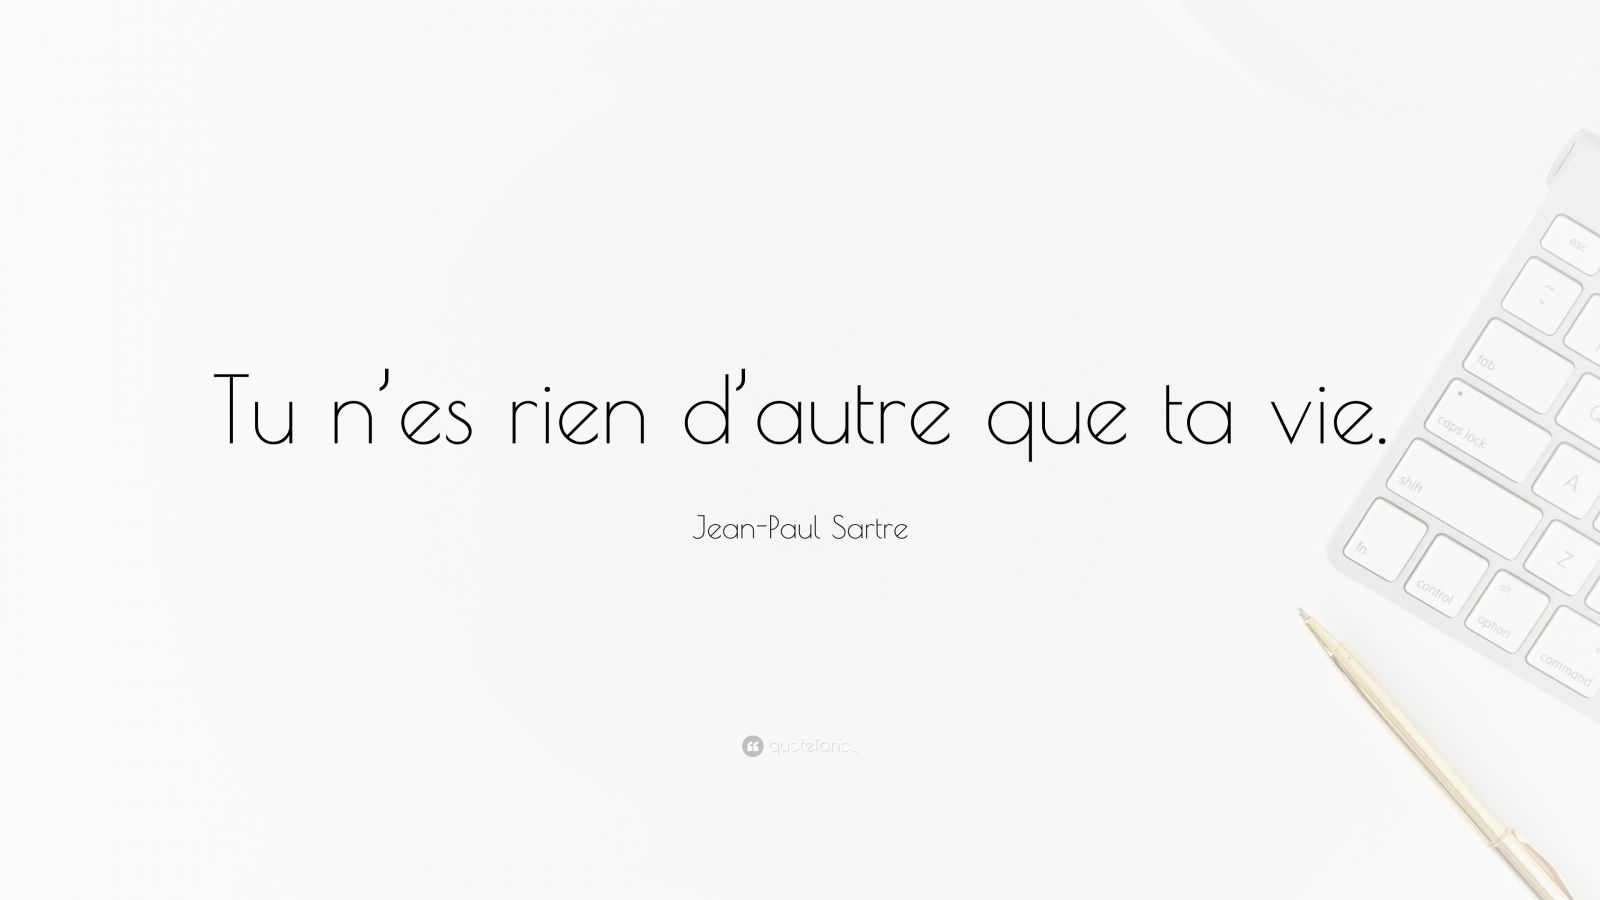 Jean-Paul Sartre Quote: “Tu n’es rien d’autre que ta vie.”